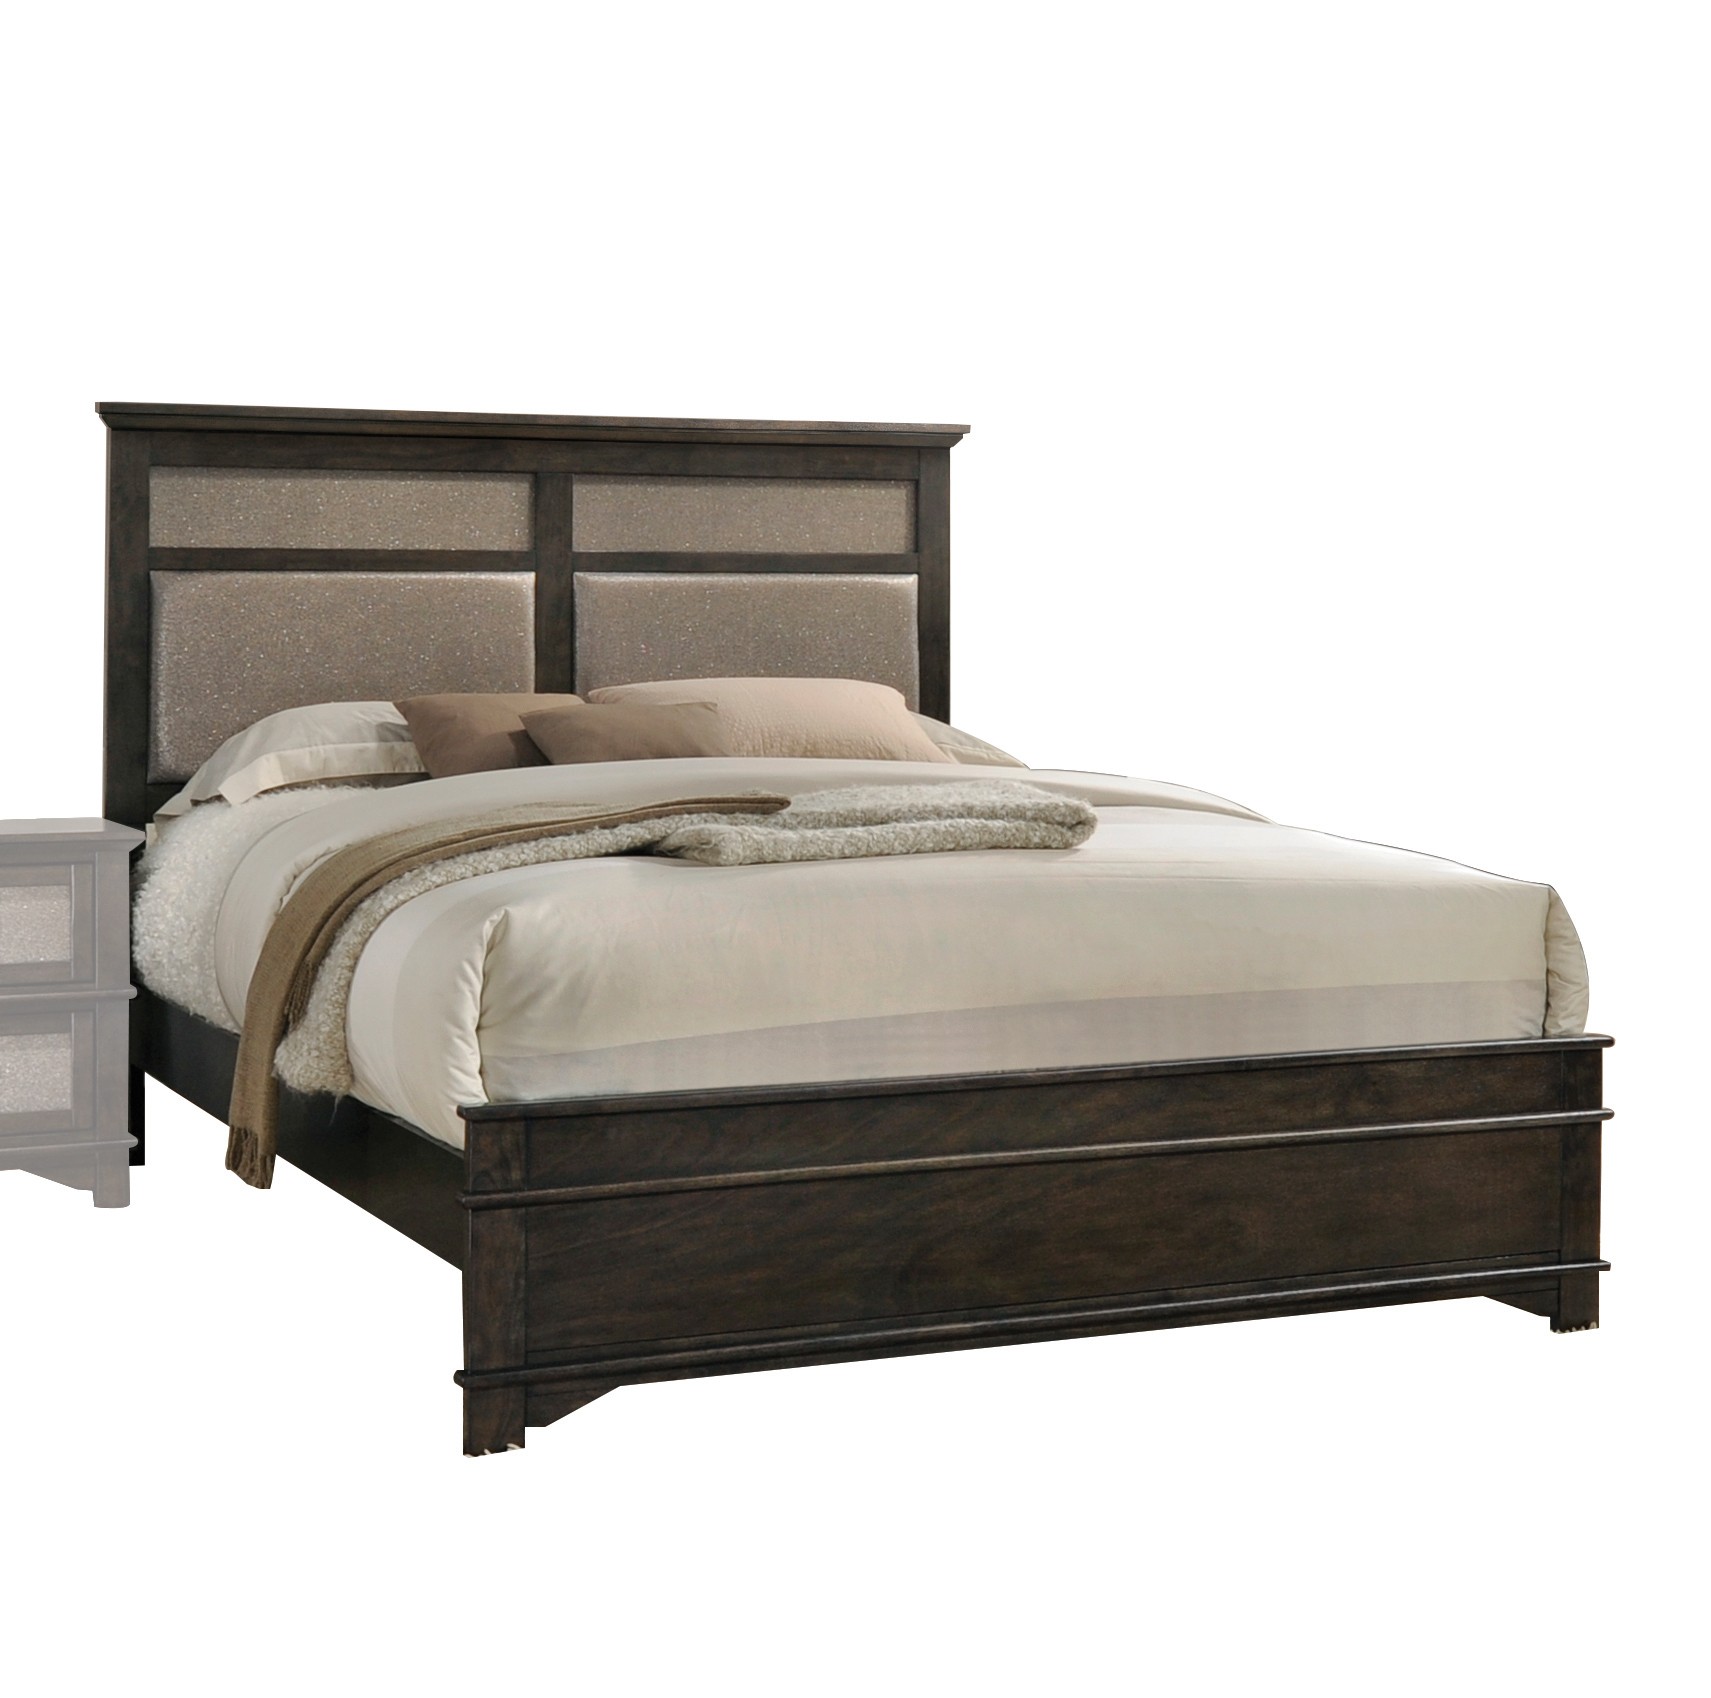 81" X 85" X 52" Copper PU Dark Walnut Wood Upholstery King Bed